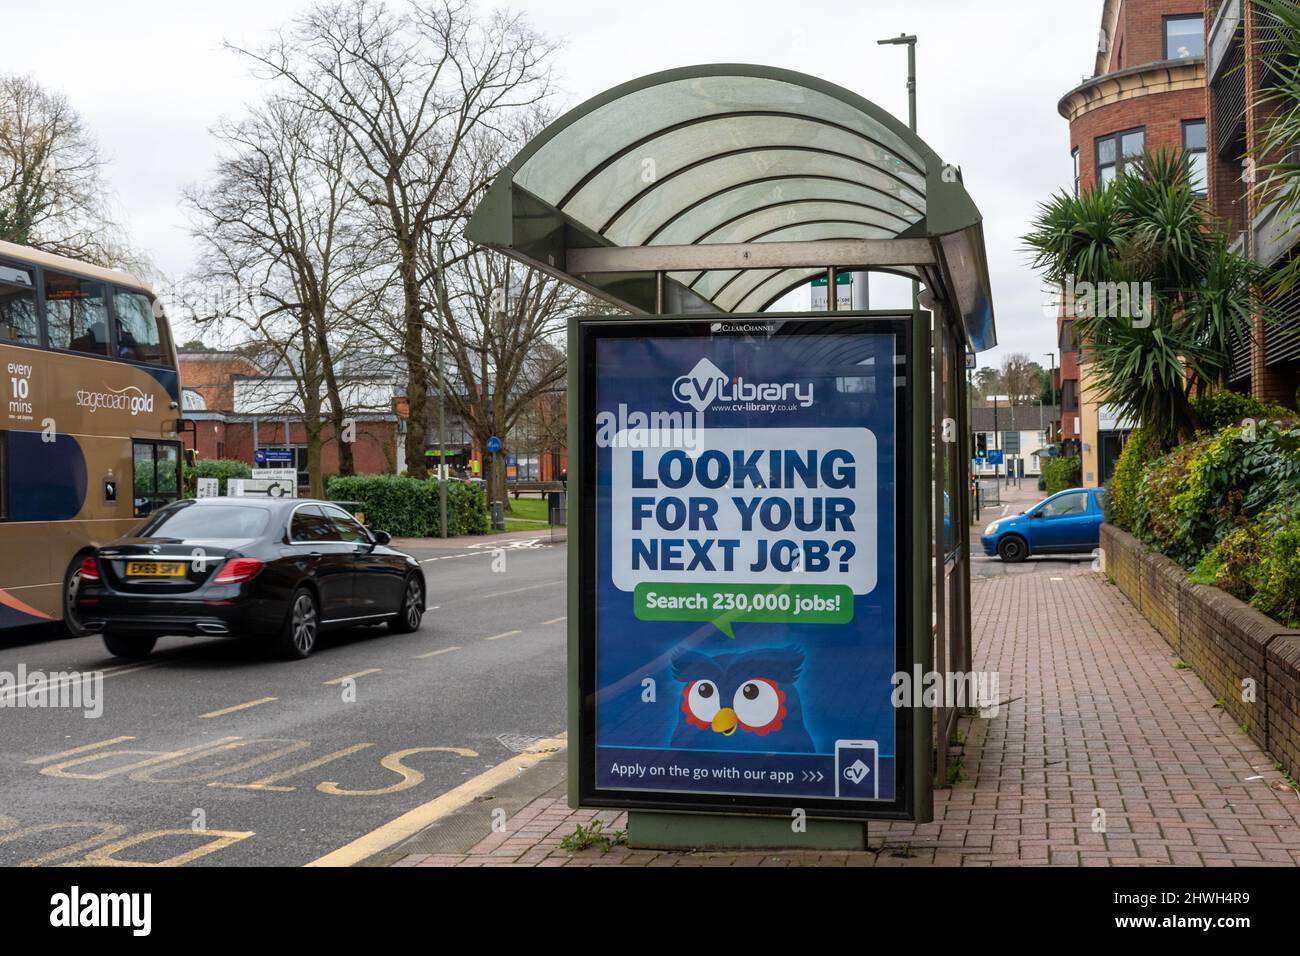 Publicité pour CV-Library Job Board (entreprise de recrutement) dans un abri d'autobus à Surrey, Angleterre, Royaume-Uni Banque D'Images